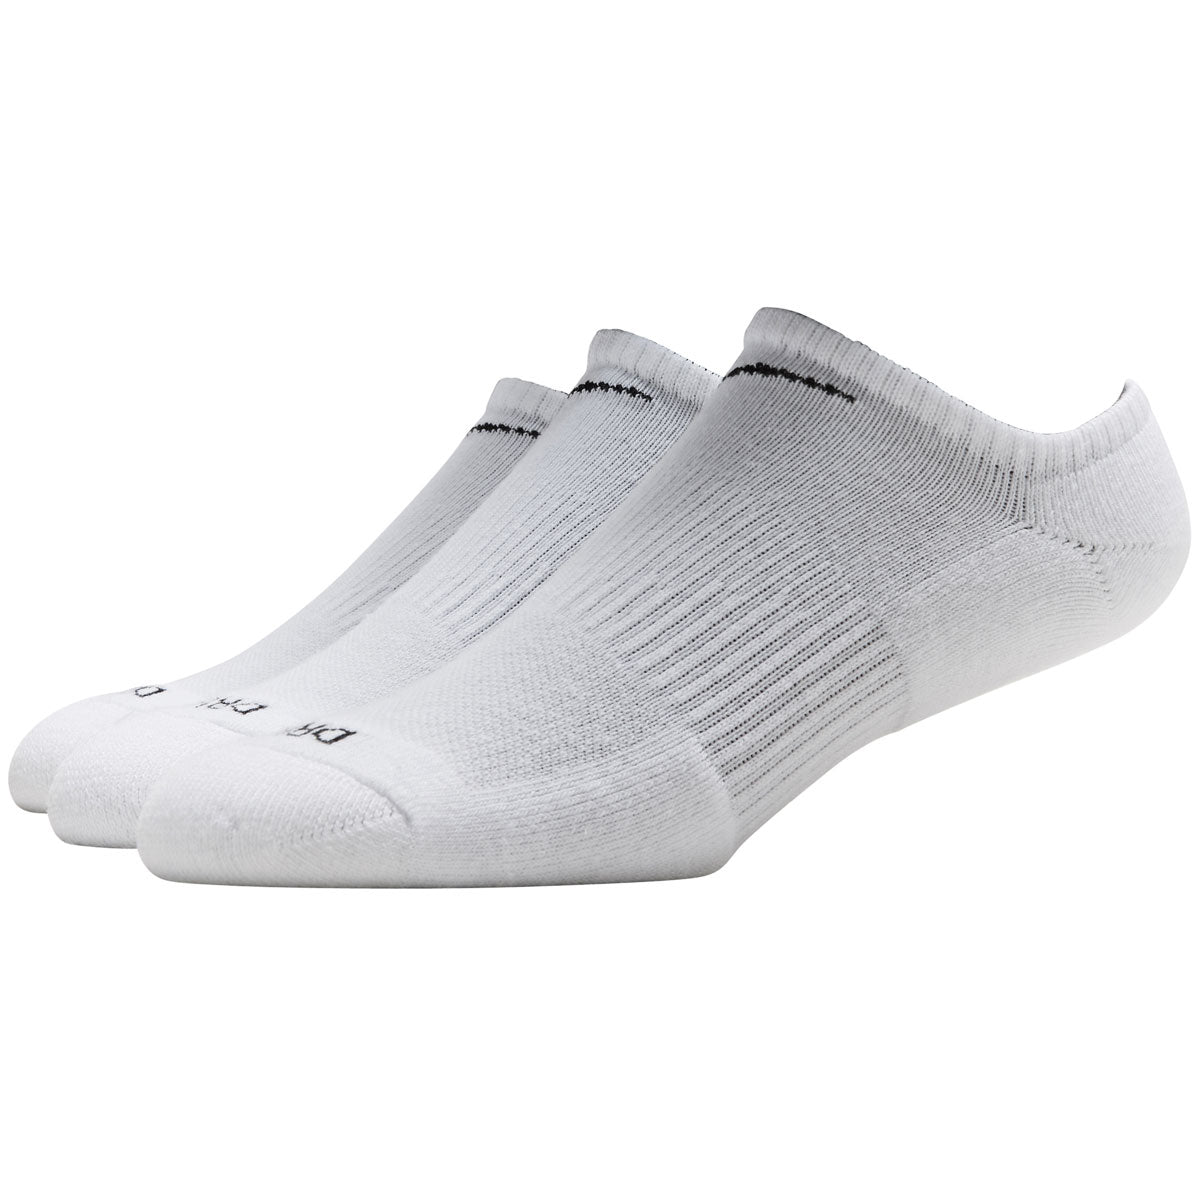 Nike Everyday Plus Cushion 3 Pack of Socks - White/Black image 1